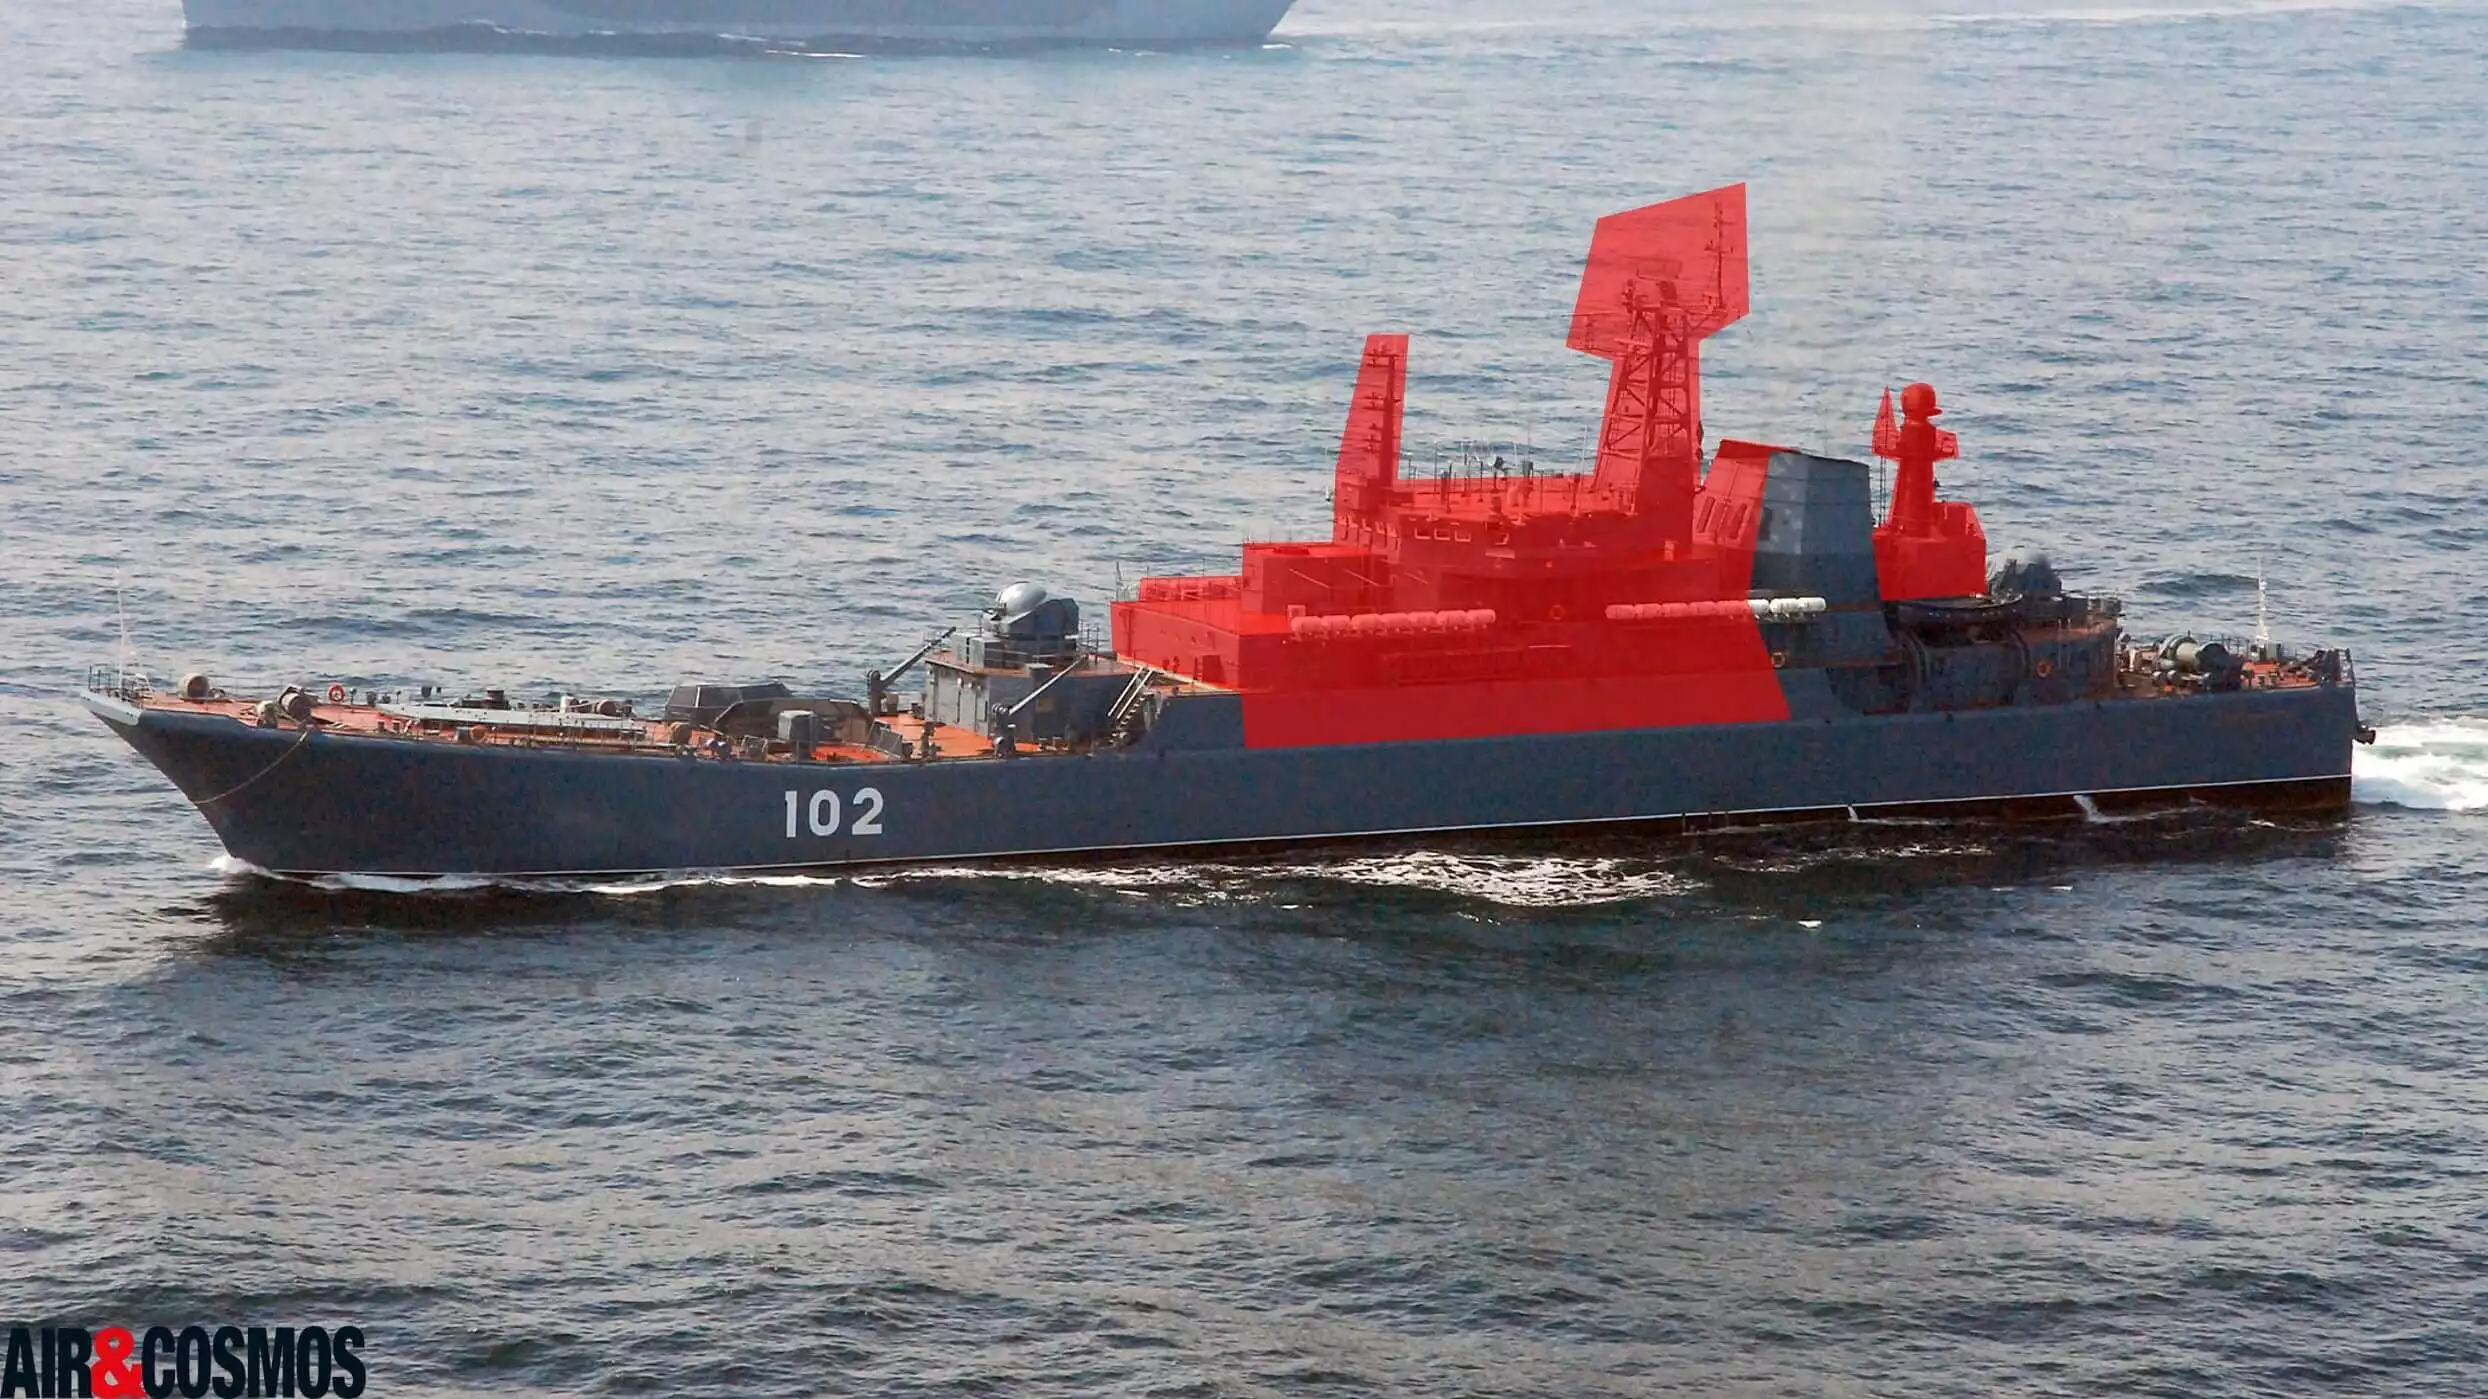 Représentation des dommages (visibles uniquement en OSINT) du Minsk sur le Kaliningrad, un autre navire russe de la classe Ropucha I.